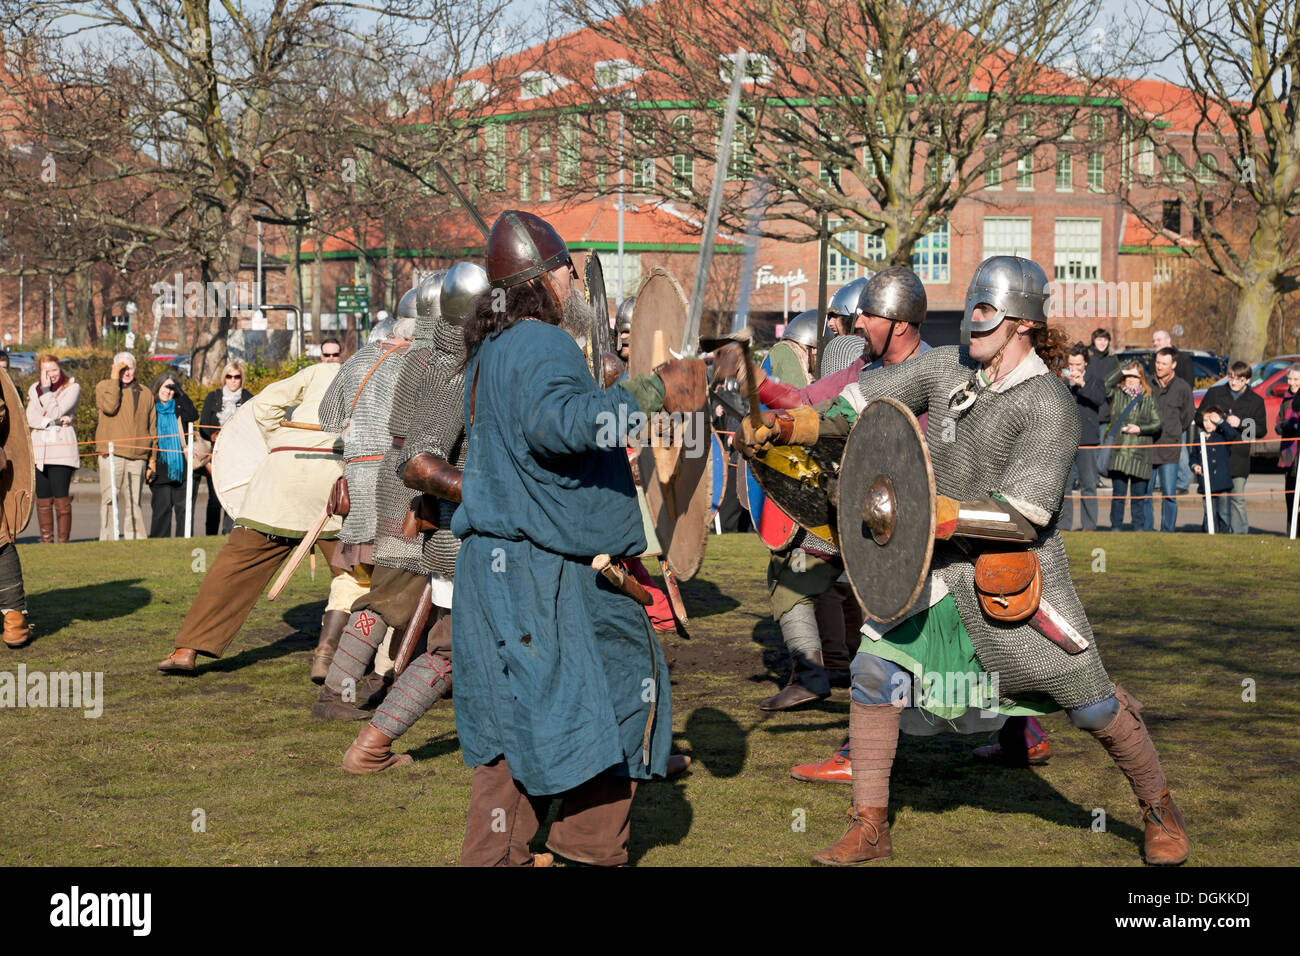 A skirmish reenactment between Vikings and Anglo Saxons at the Viking Festival. Stock Photo